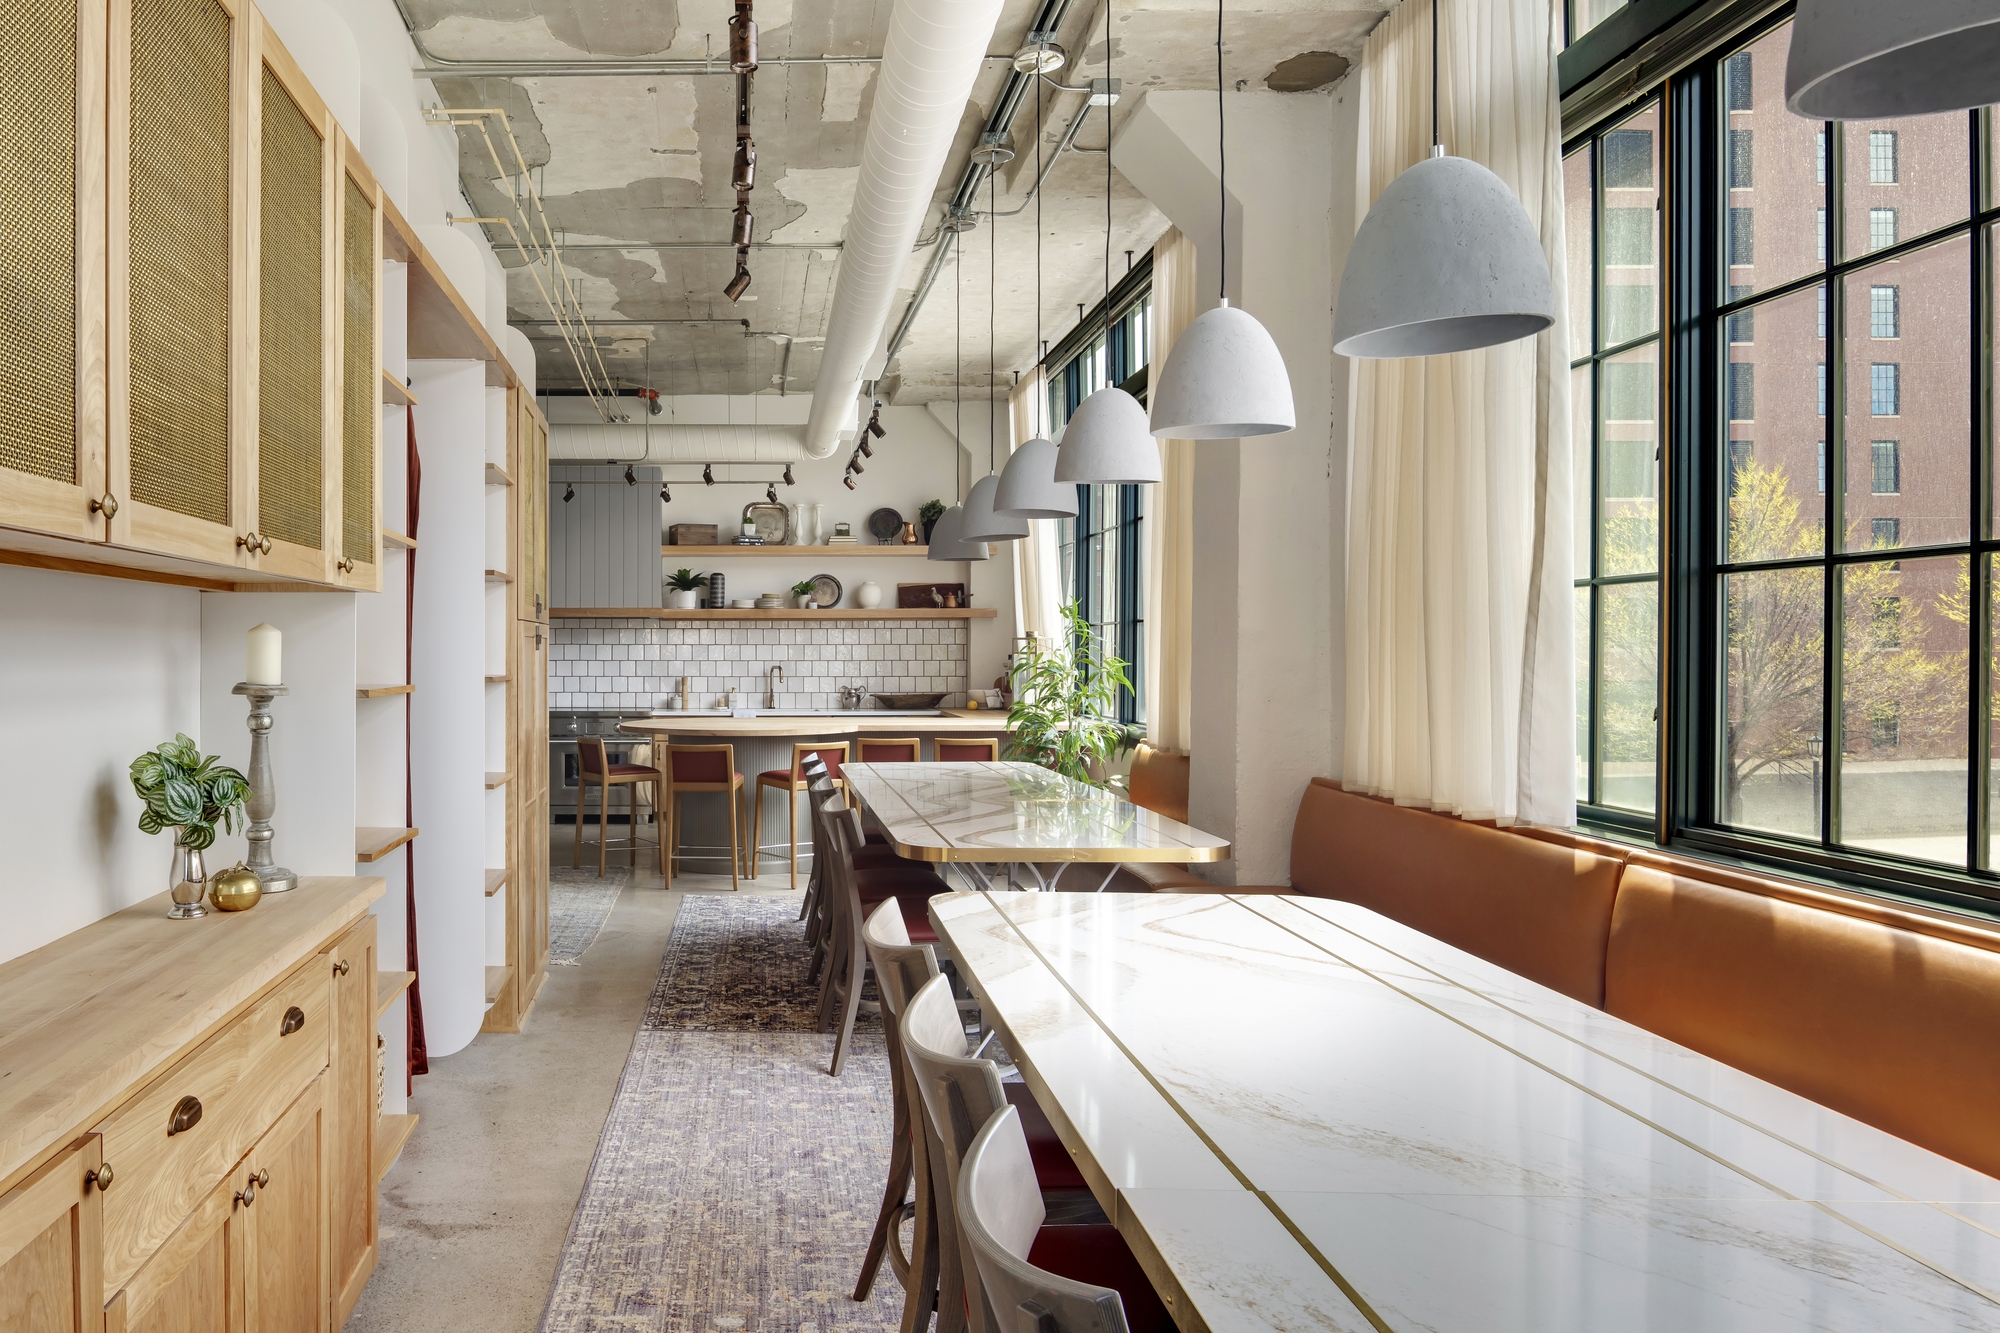 公寓私人用餐空间|ART-Arrakis | 建筑室内设计的创新与灵感